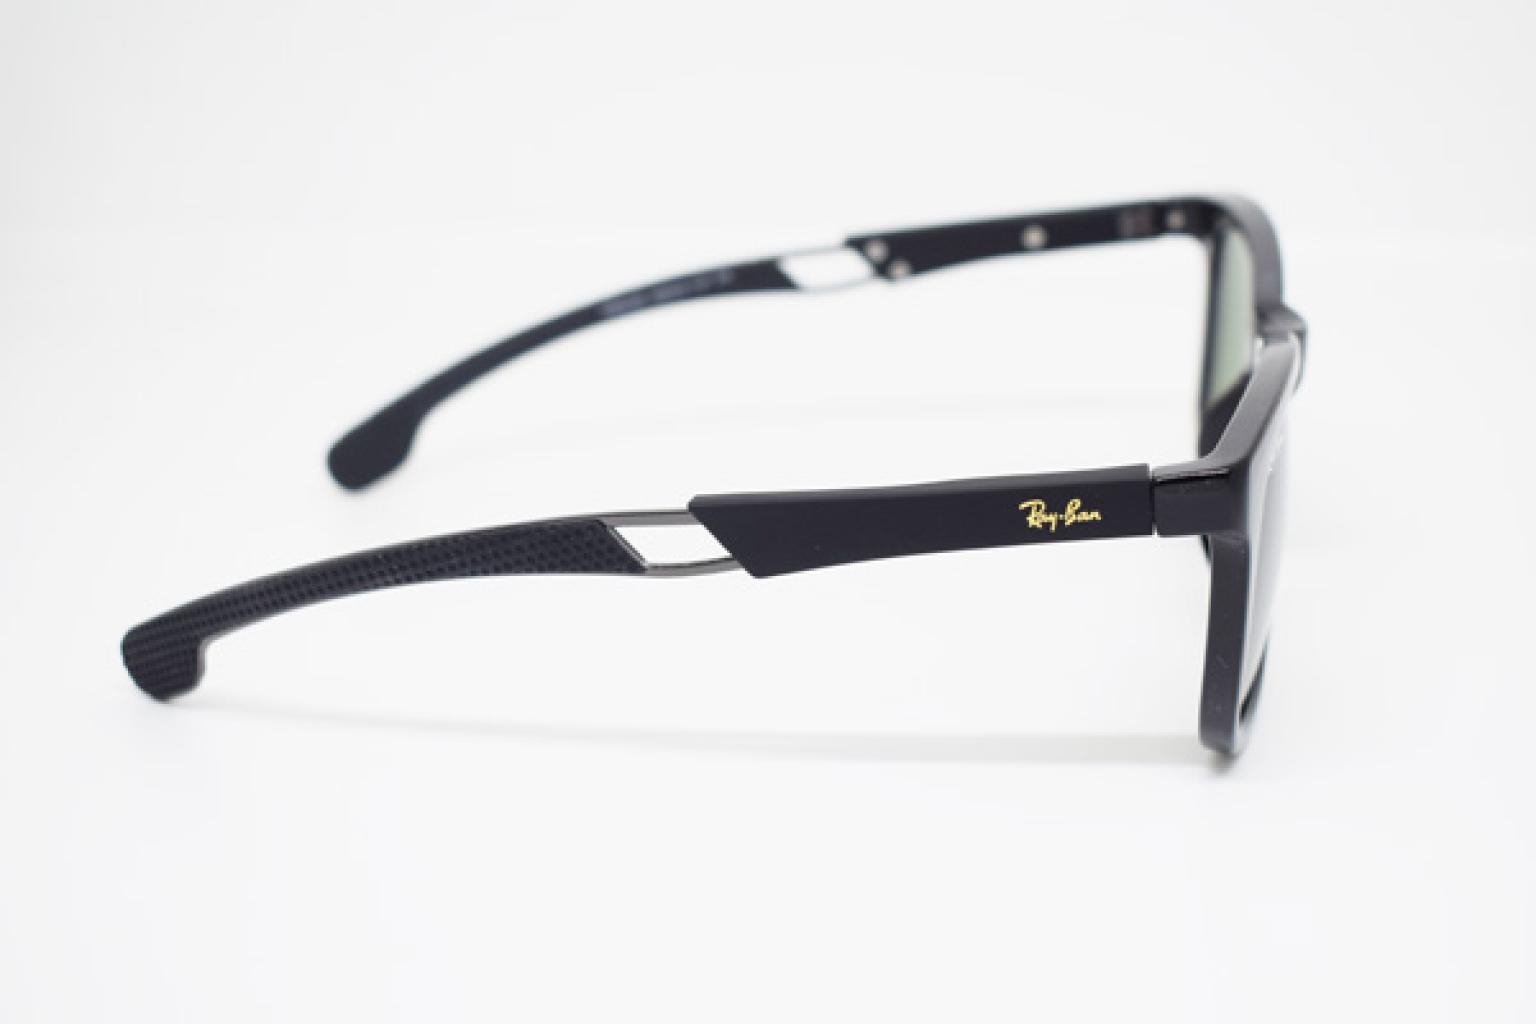 Brand Design Men's Sunglasses For Driving Glass Men Uv Protection Sun Glasses Travel Eye wear Glass Lens Uv400 swimming glass